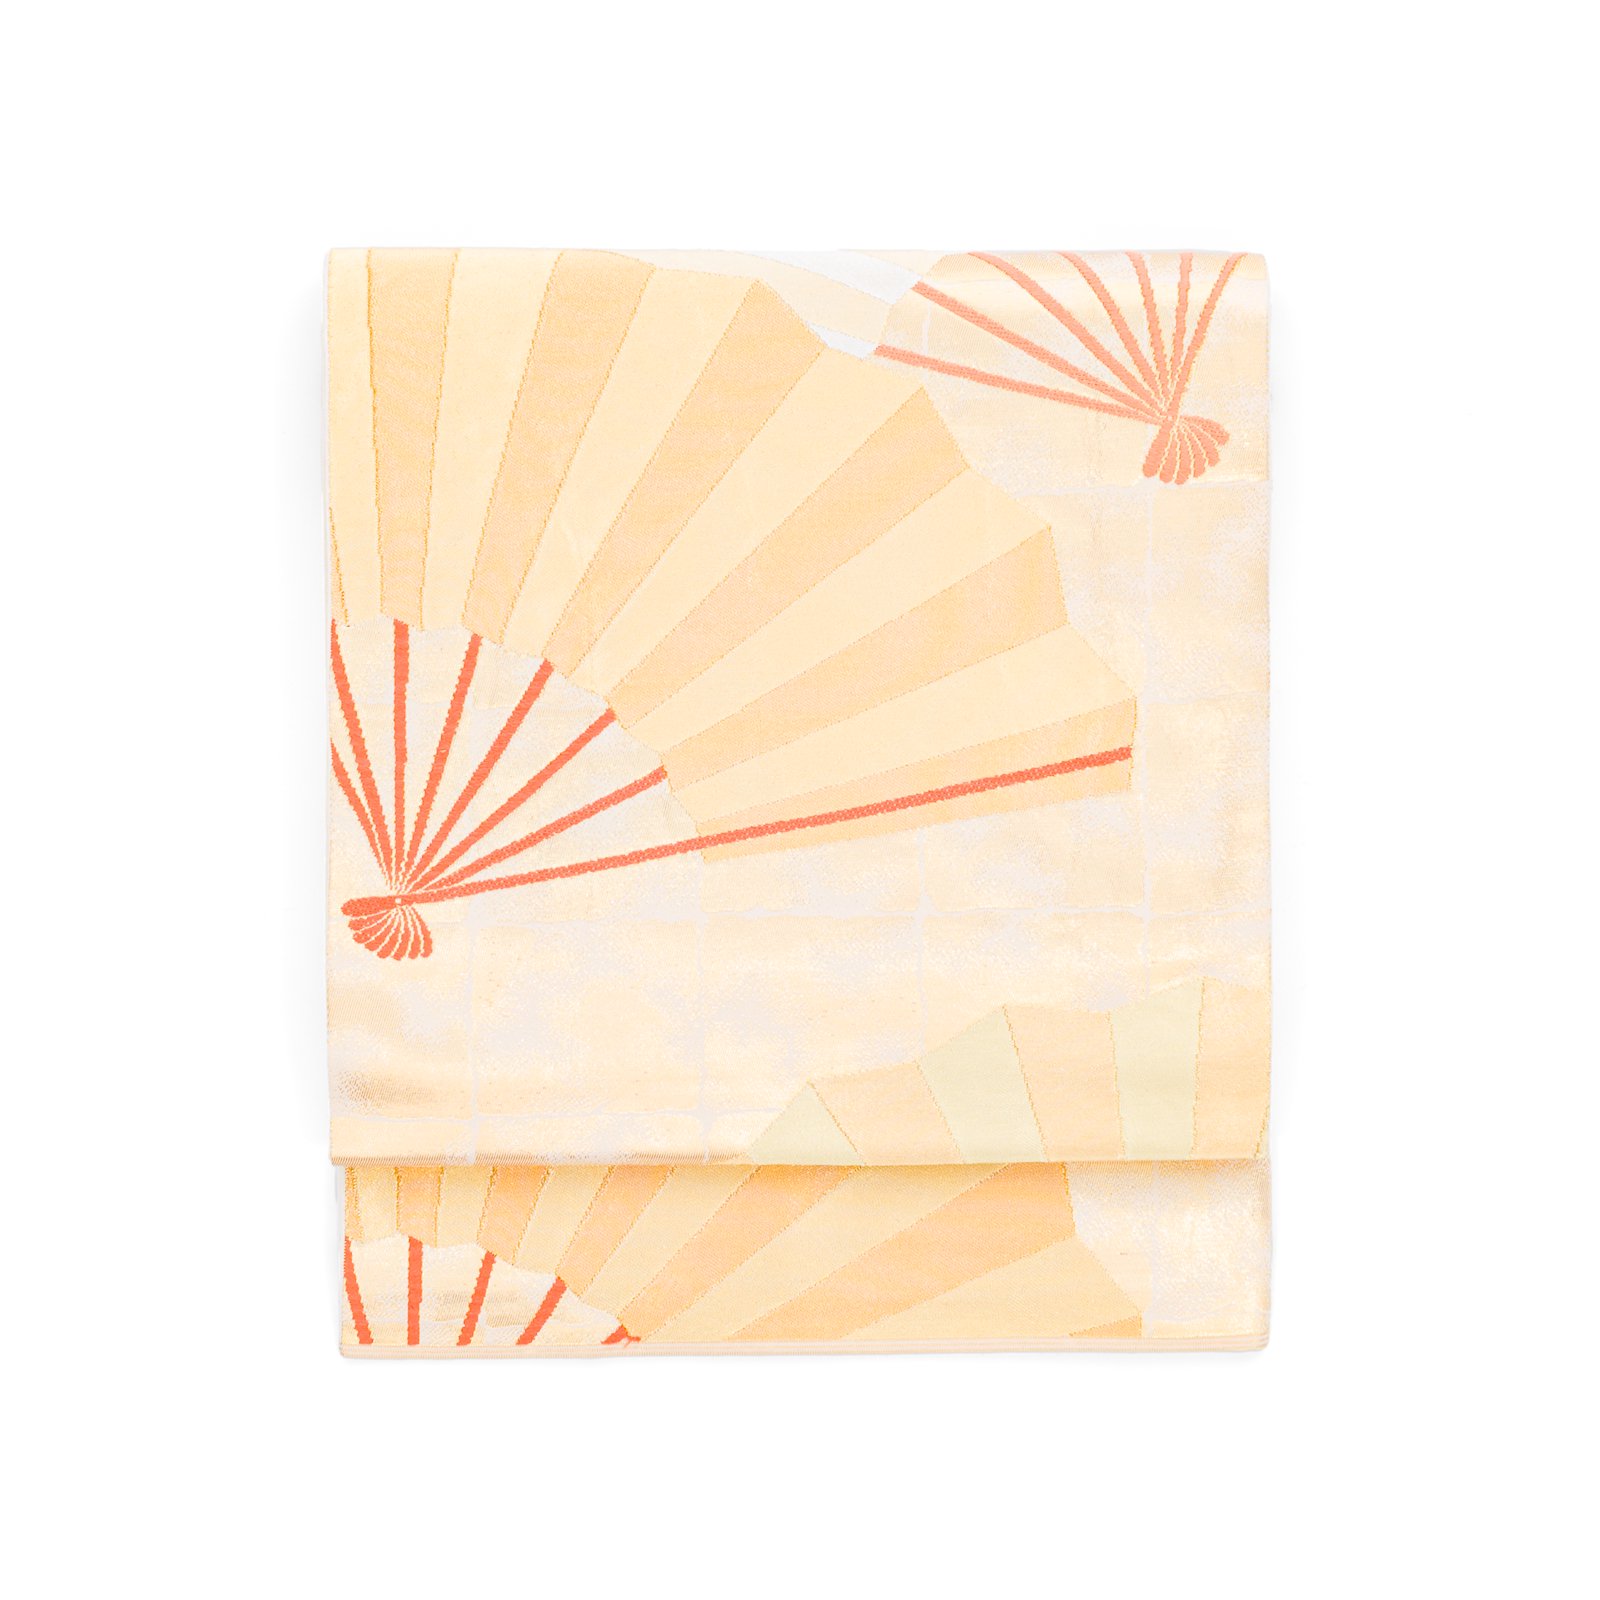 川島の袋帯▫小豆色に少しピンクを足した地に金糸のダイナミックな松